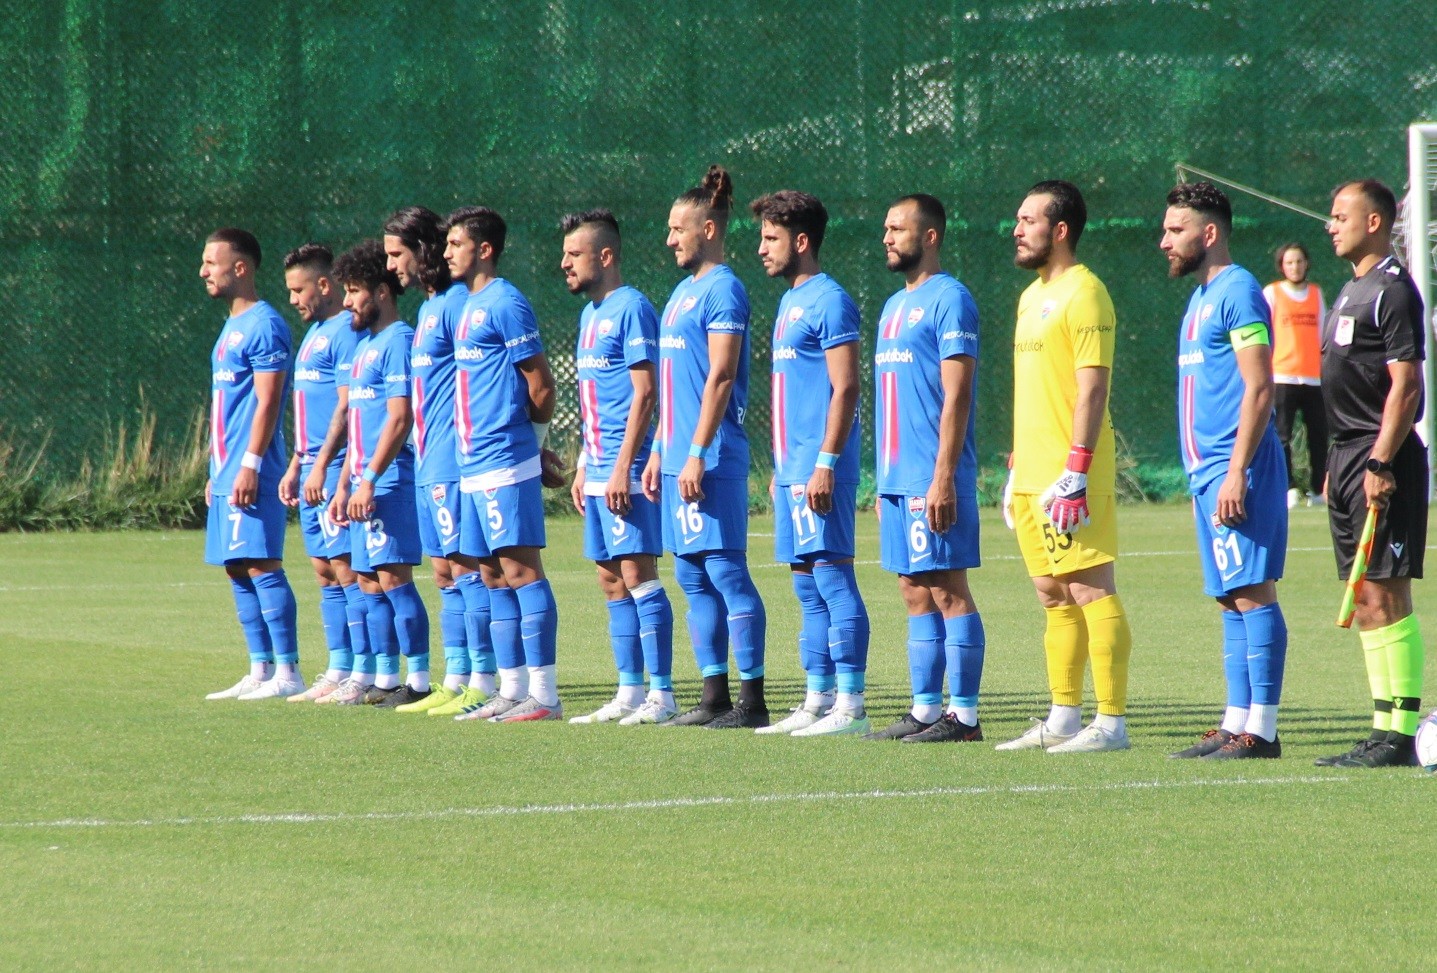 HD Elazığ Karakoçan FK, 18 futbolcuyla Antalya’da